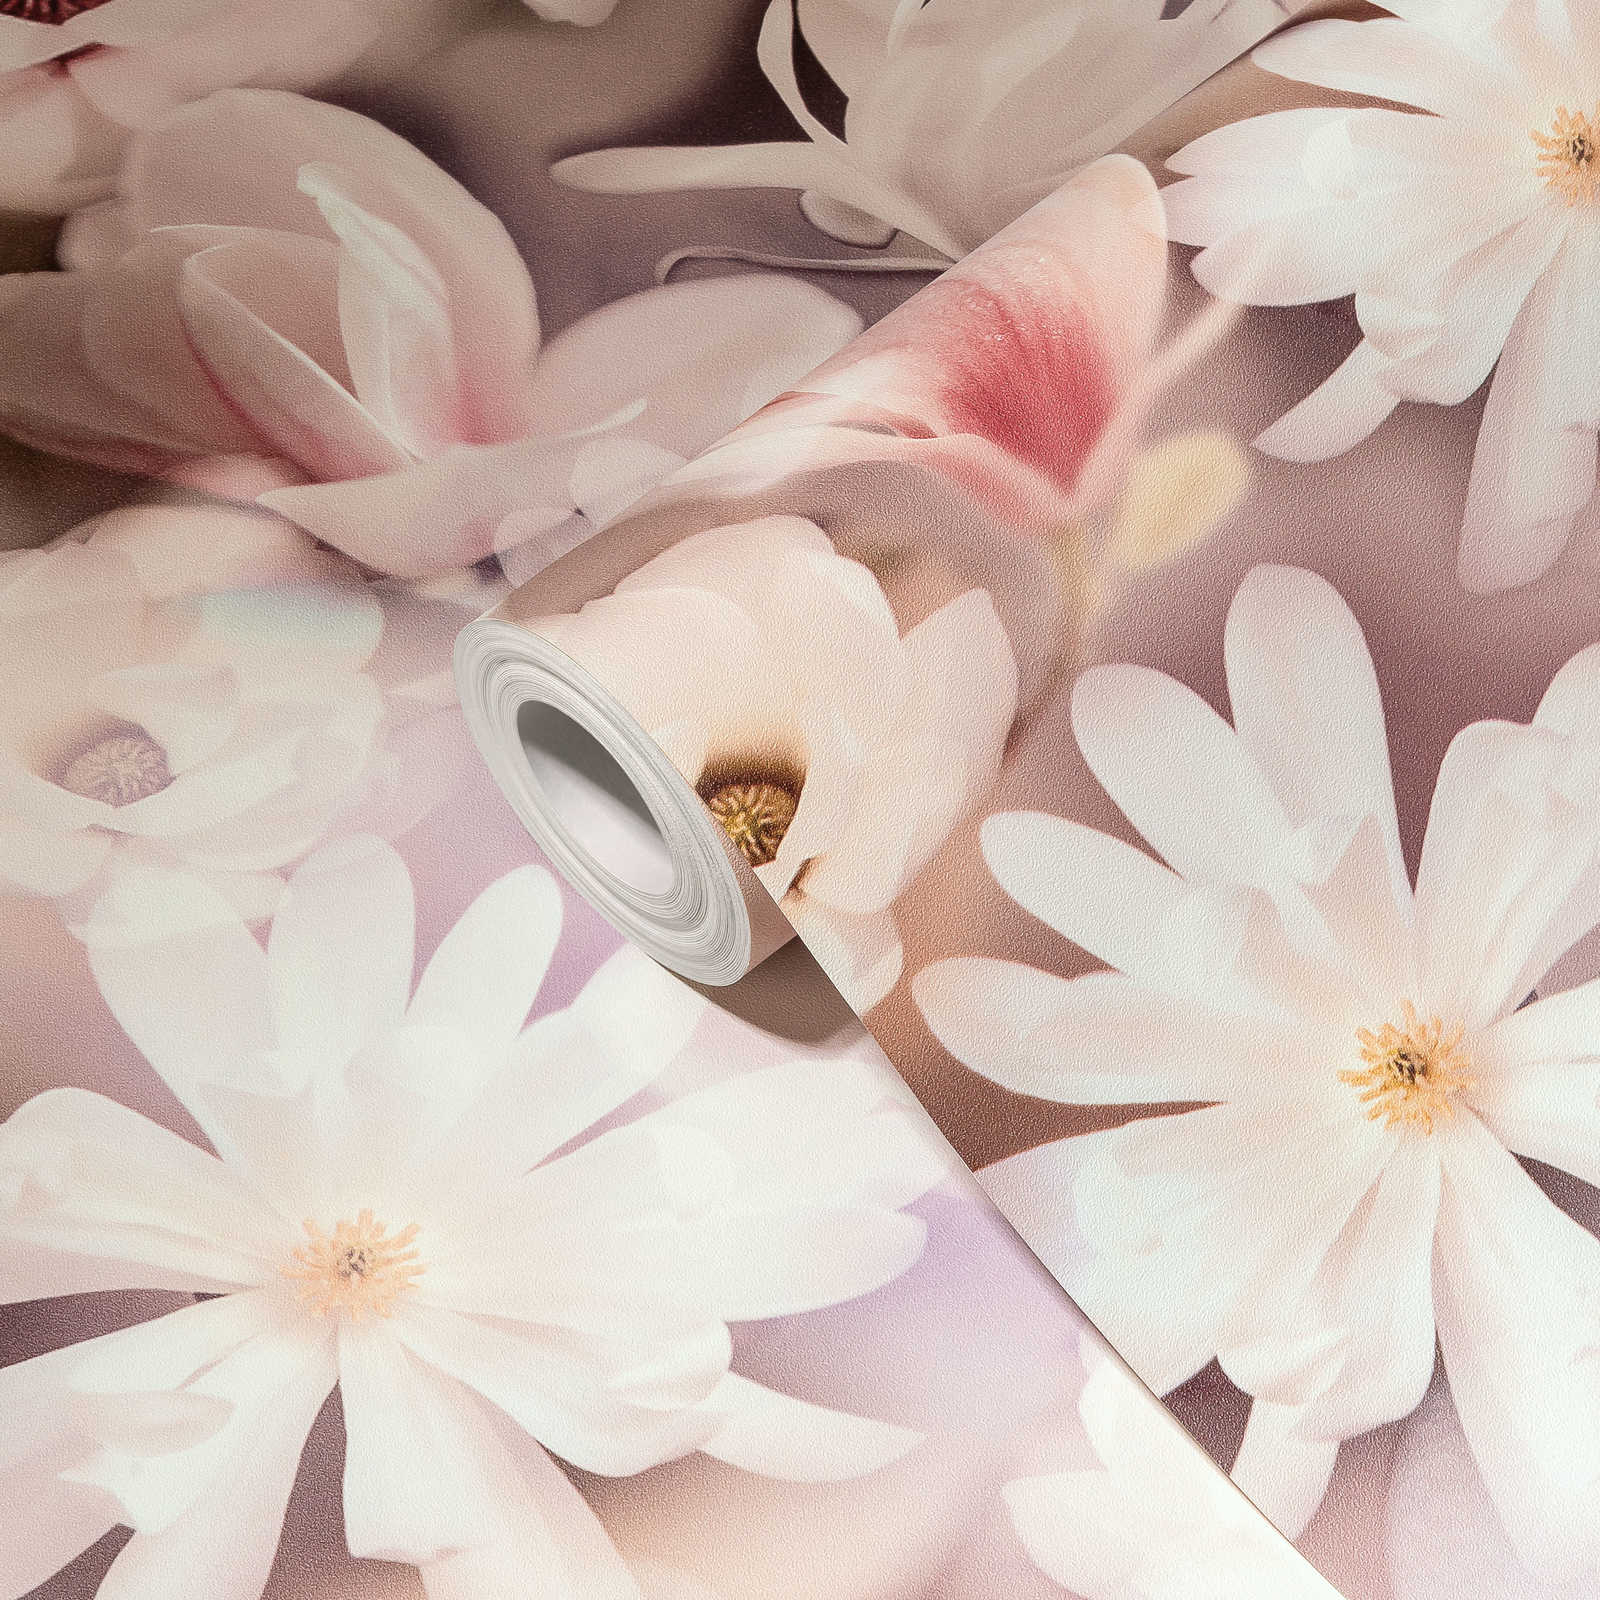             Blumentapete Collage Design in Rosa und Weiß
        